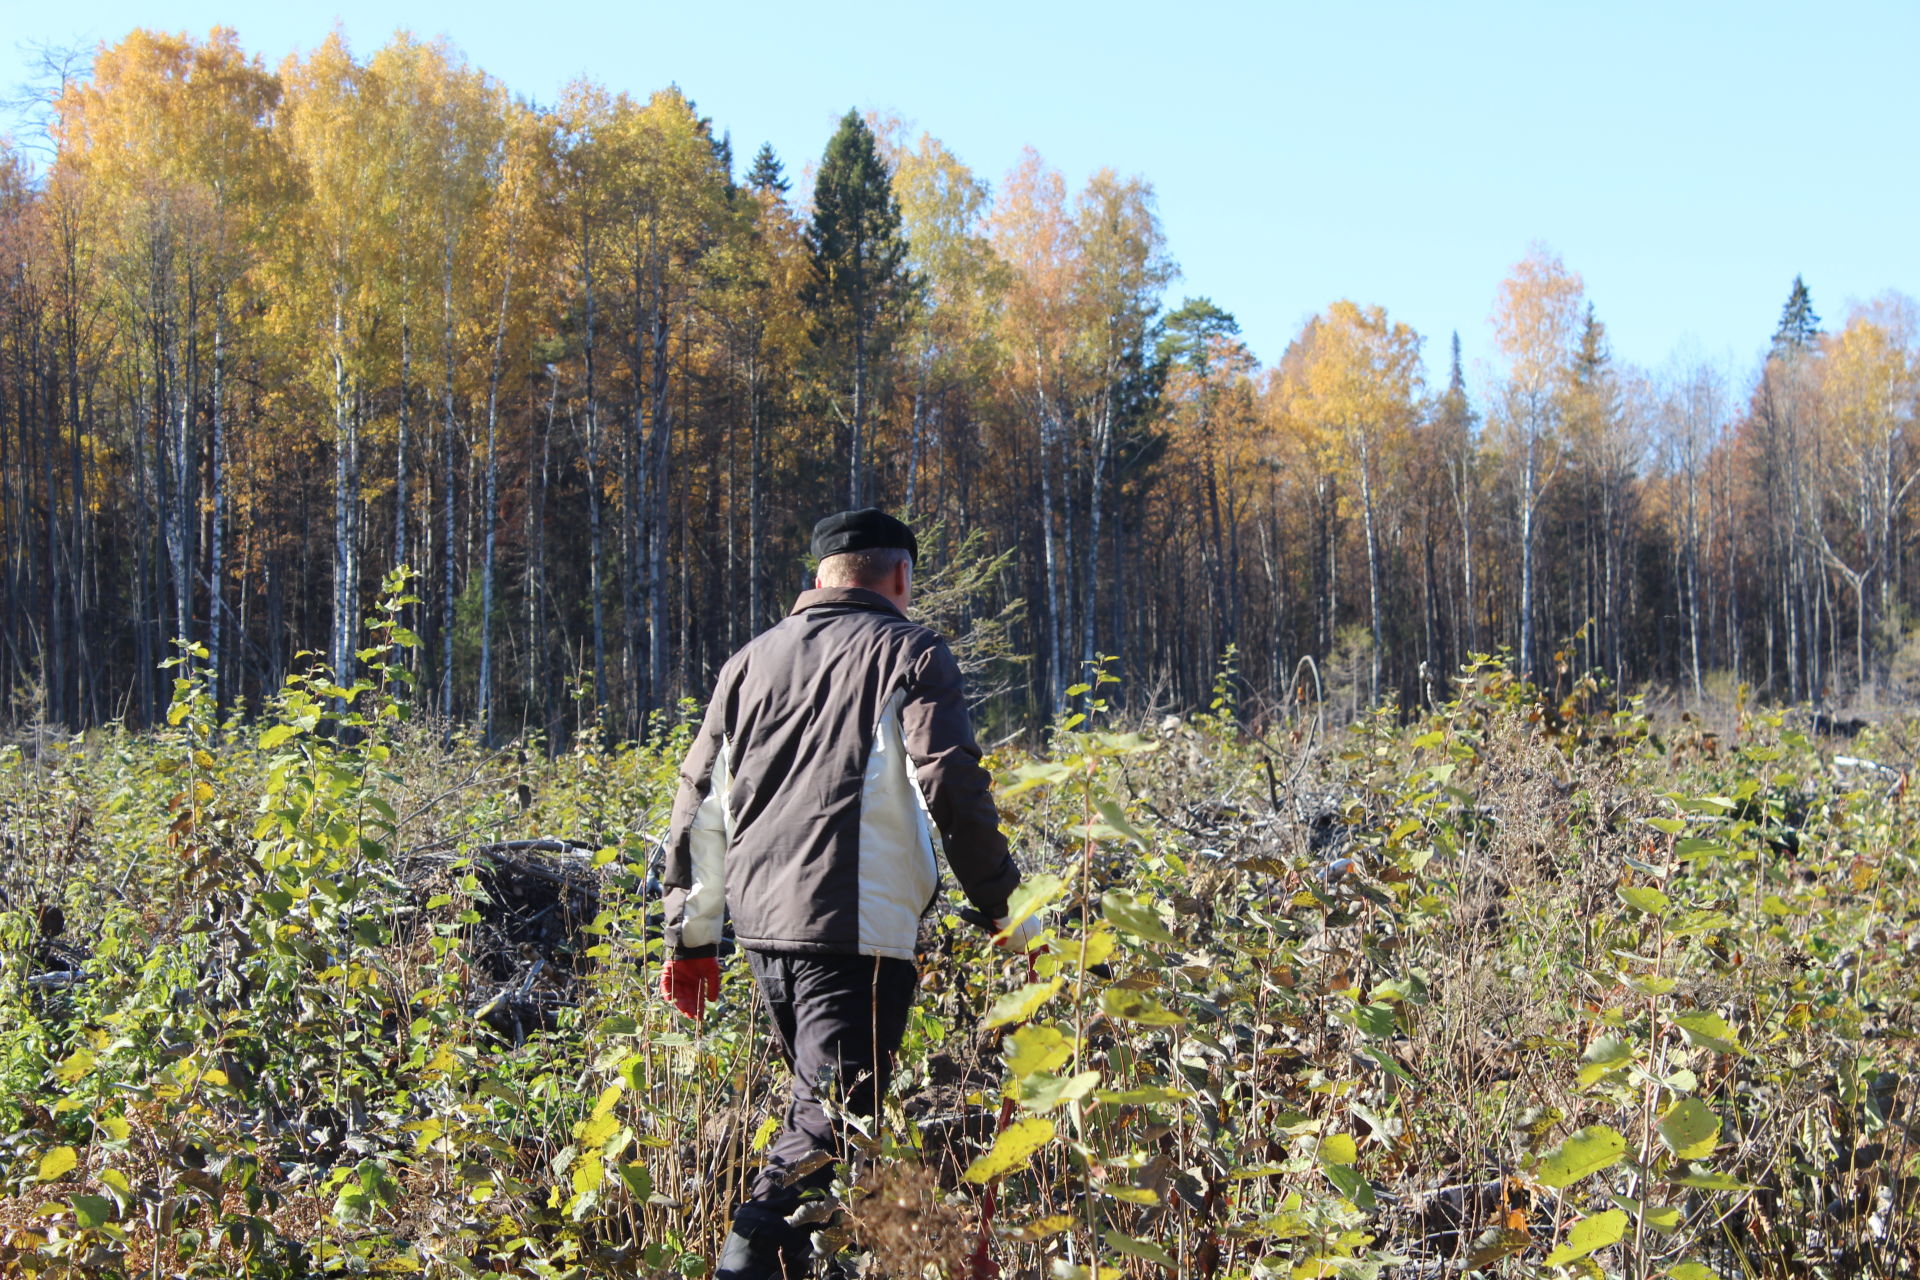 В рамках акции "Сохраним лес" агрызцы на 2,8 гектарах посадили саженцы ели